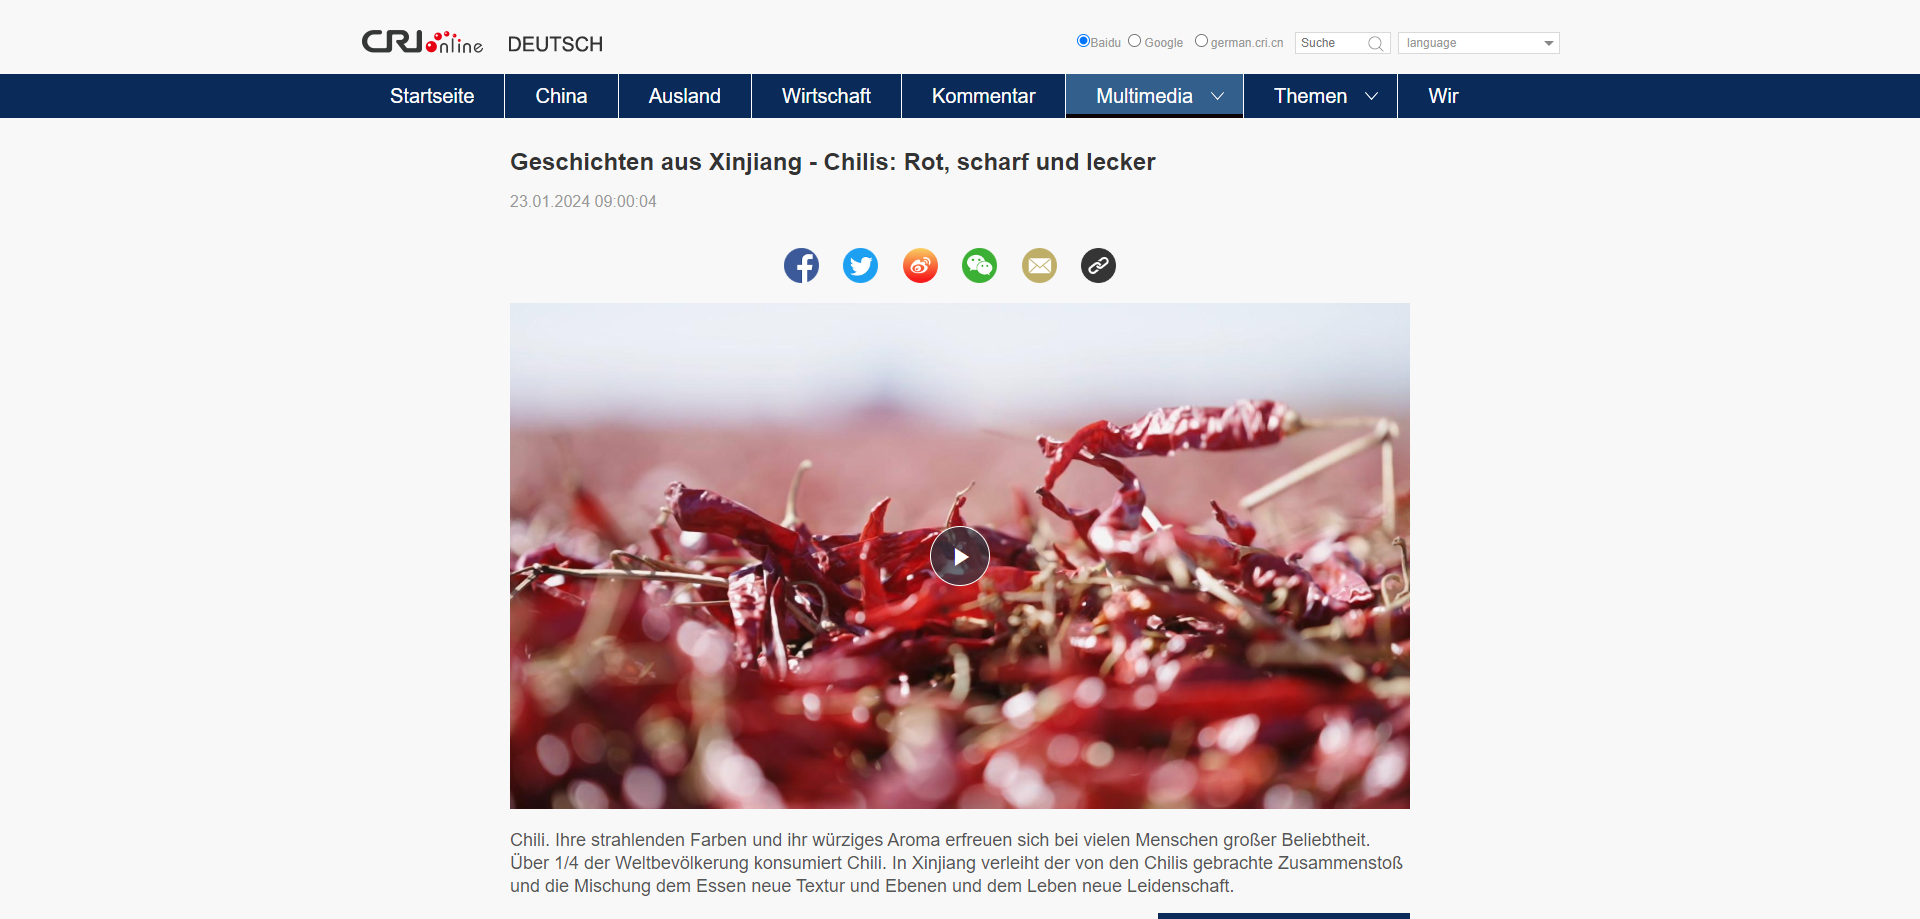 FireShot Capture 357 - Geschichten aus Xinjiang - Chilis_ Rot, scharf und lecker - german.cri.cn.png